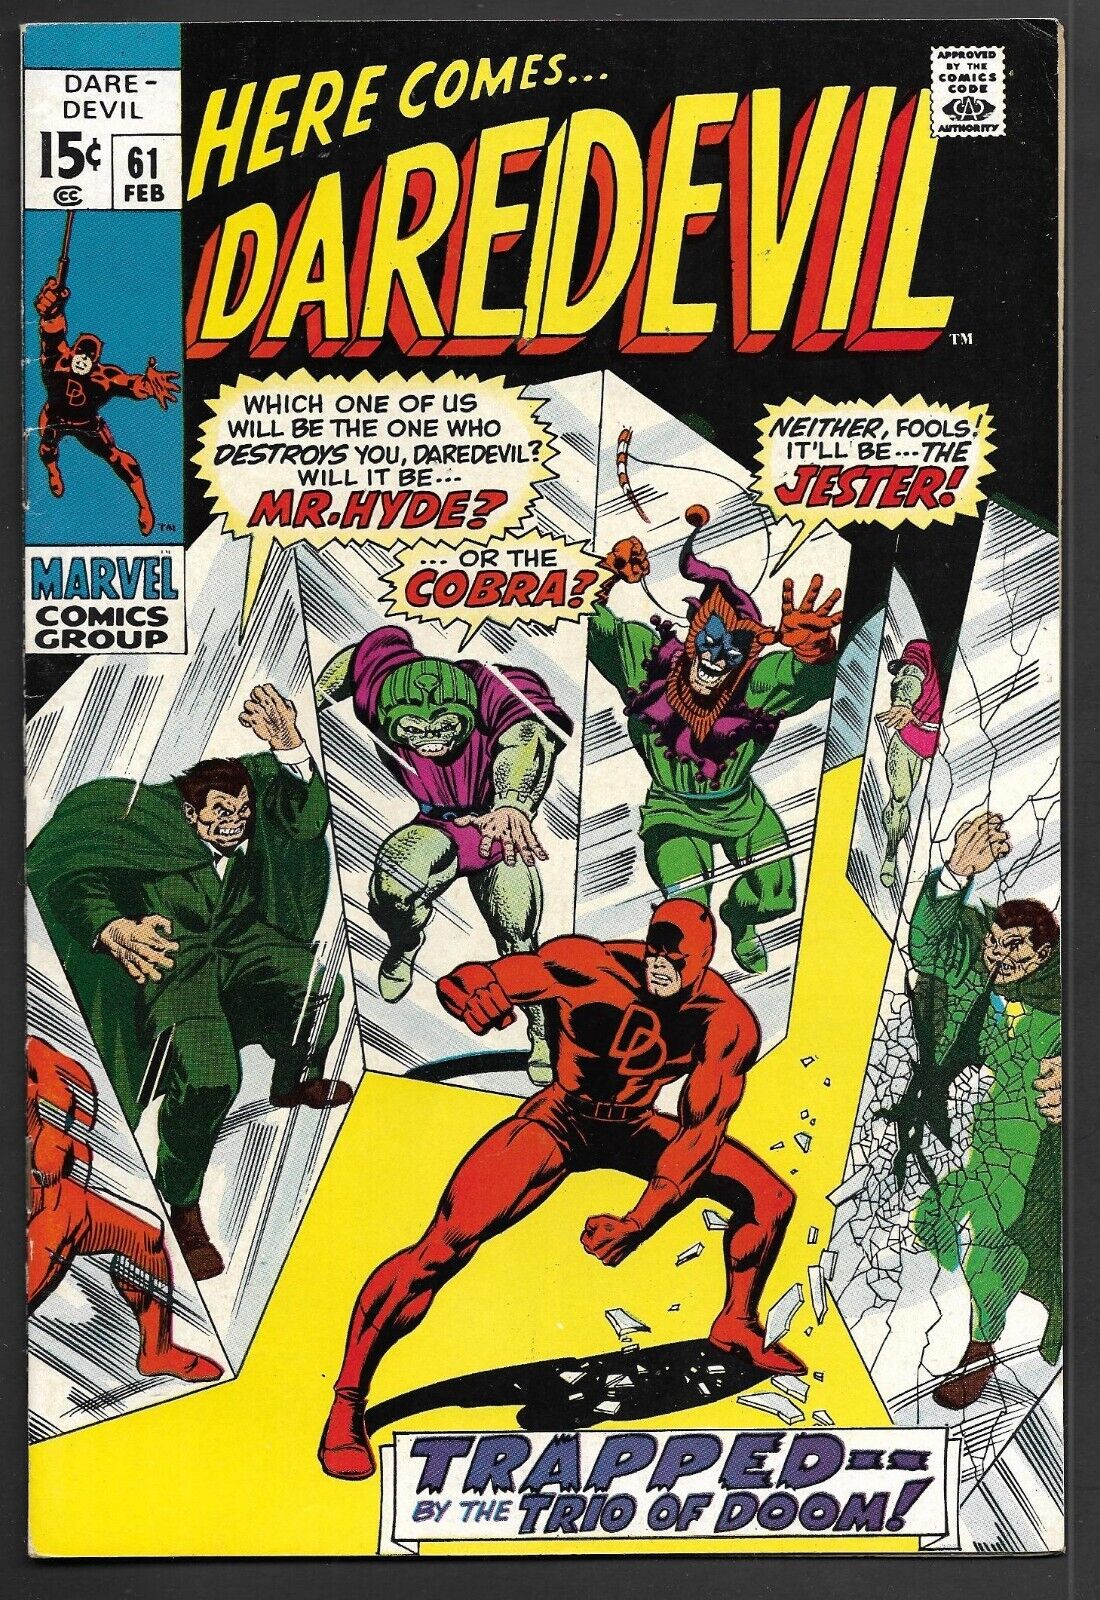 Marvel DAREDEVIL No. 61 (1970) Mr Hyde Cobra Jester Trio of Doom VF